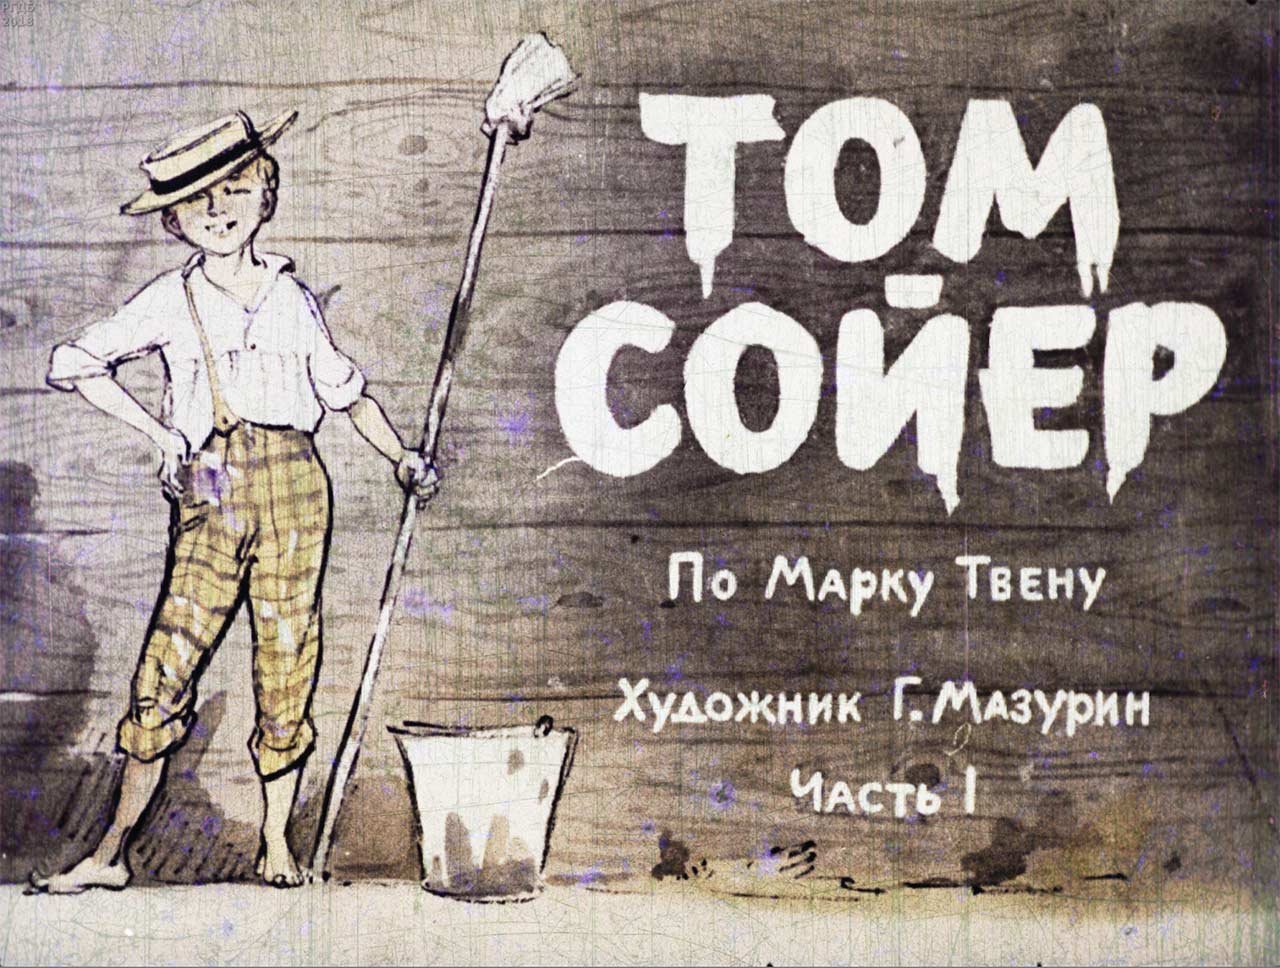 Тест приключение тома. Диафильм приключения Тома Сойера. Том Сойер великолепный маляр. Том Сойер иллюстрации к книге.